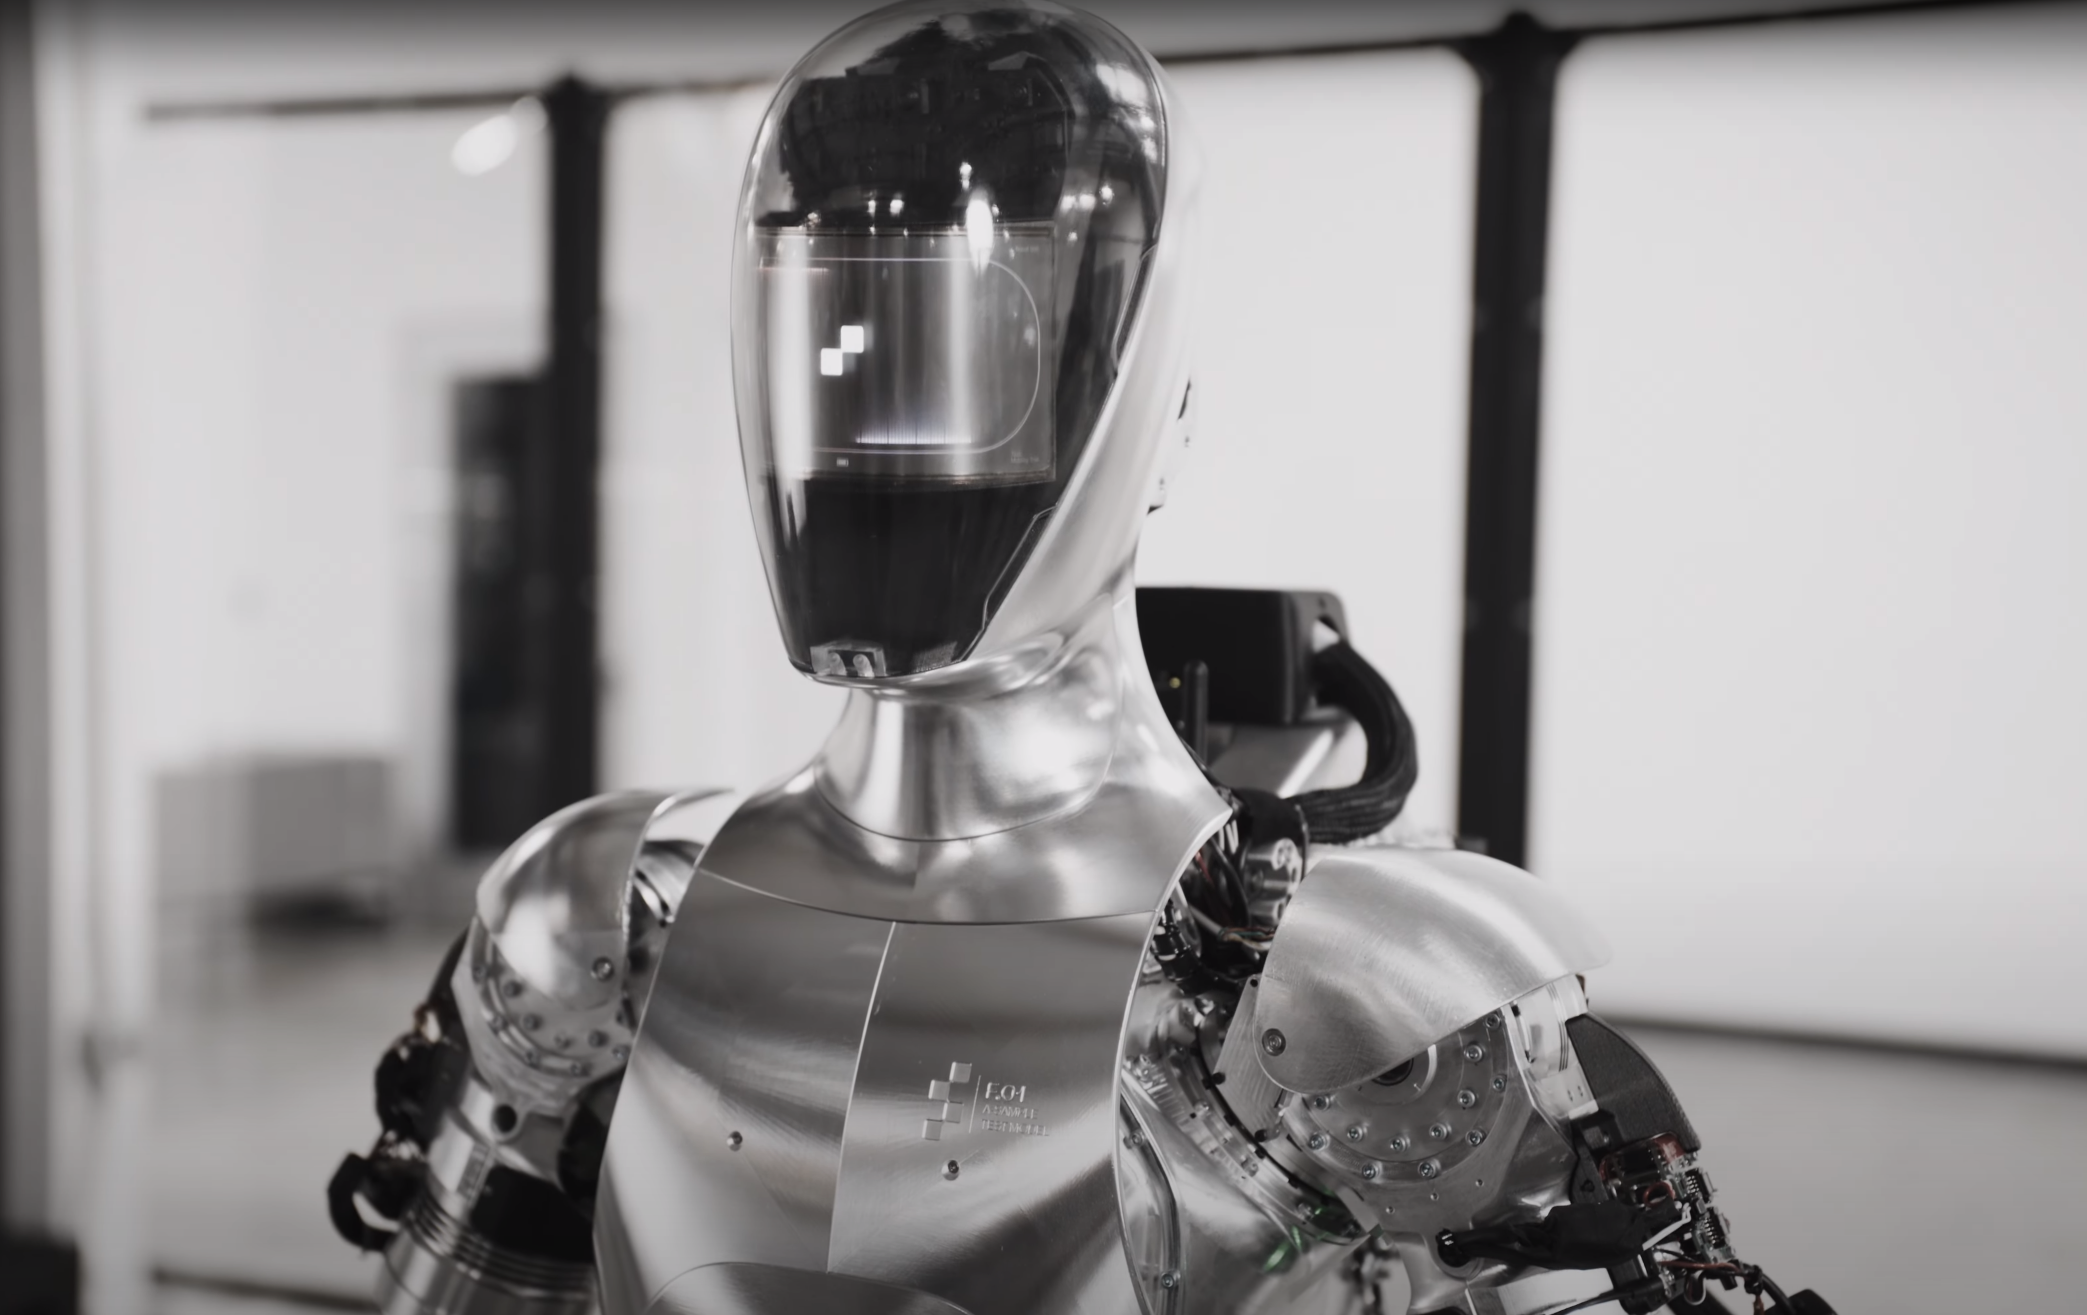 Incroyable : ce robot humanoïde a appris presque tout seul à faire le café !